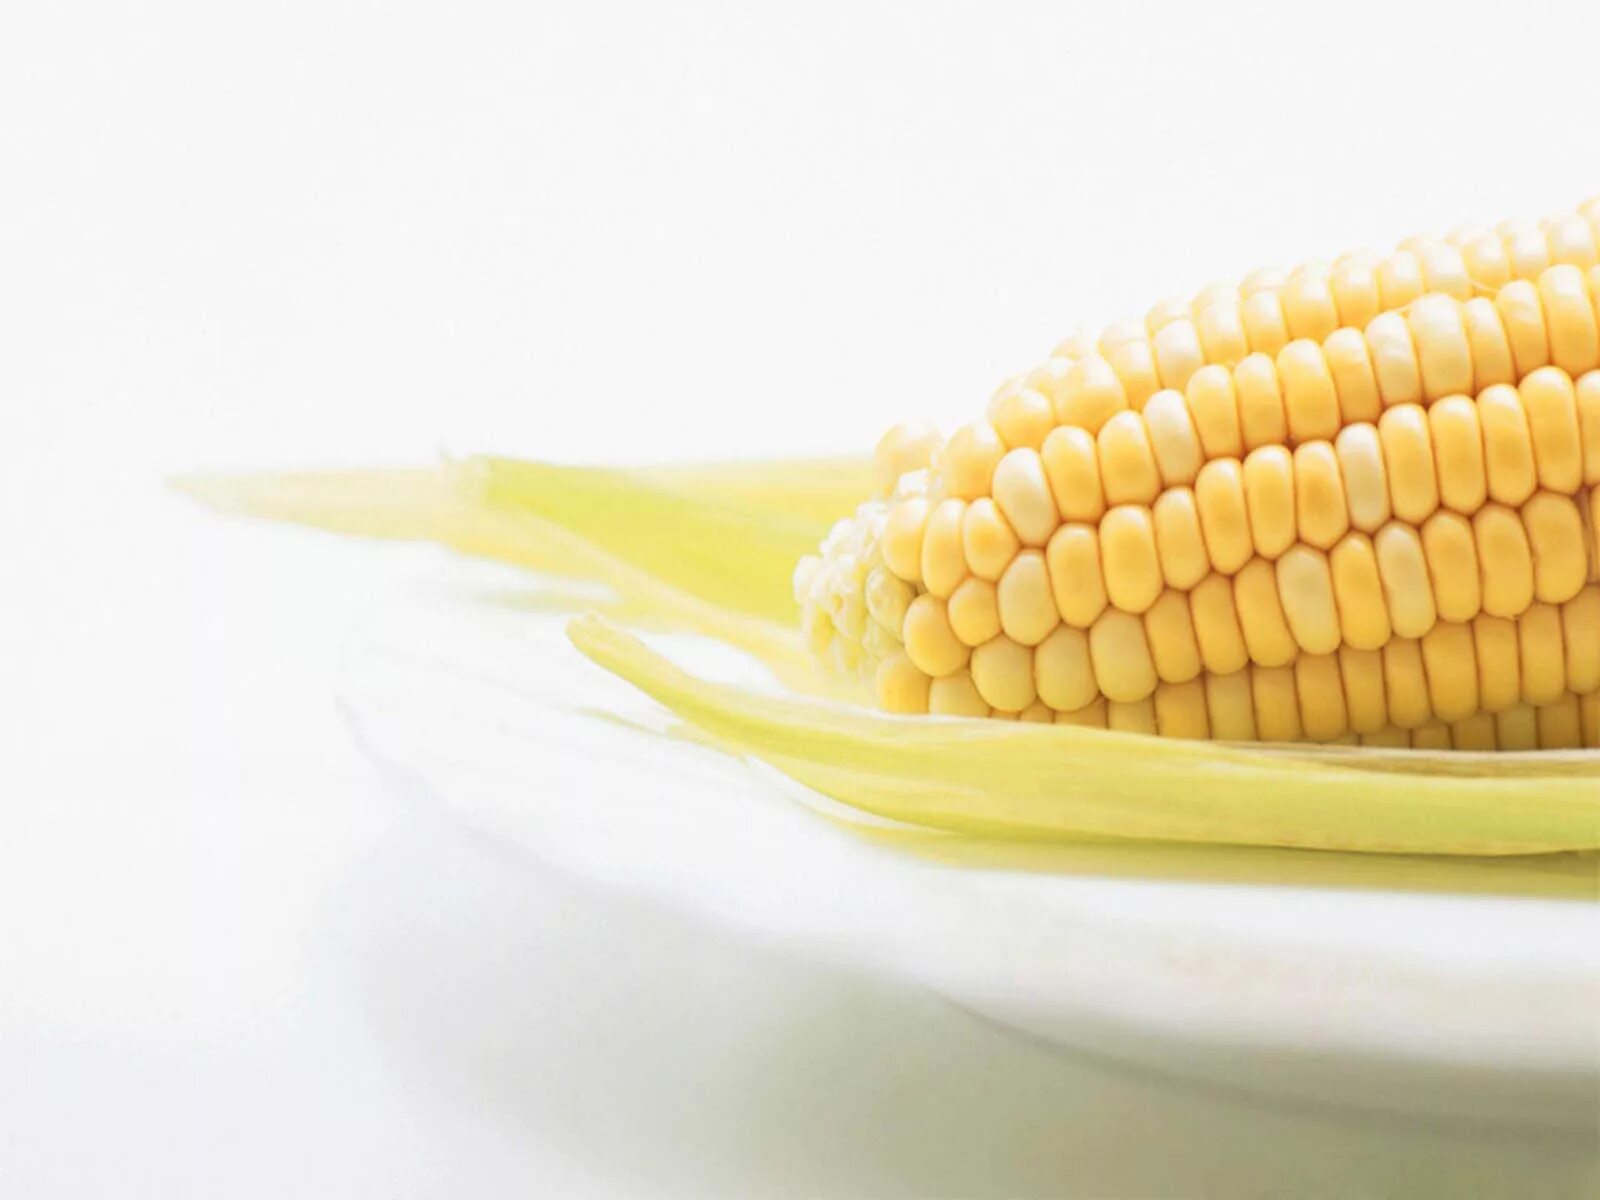 Кукуруза. Кукуруза фон. Вареная кукуруза. Кукуруза (зерно). Corn на русском